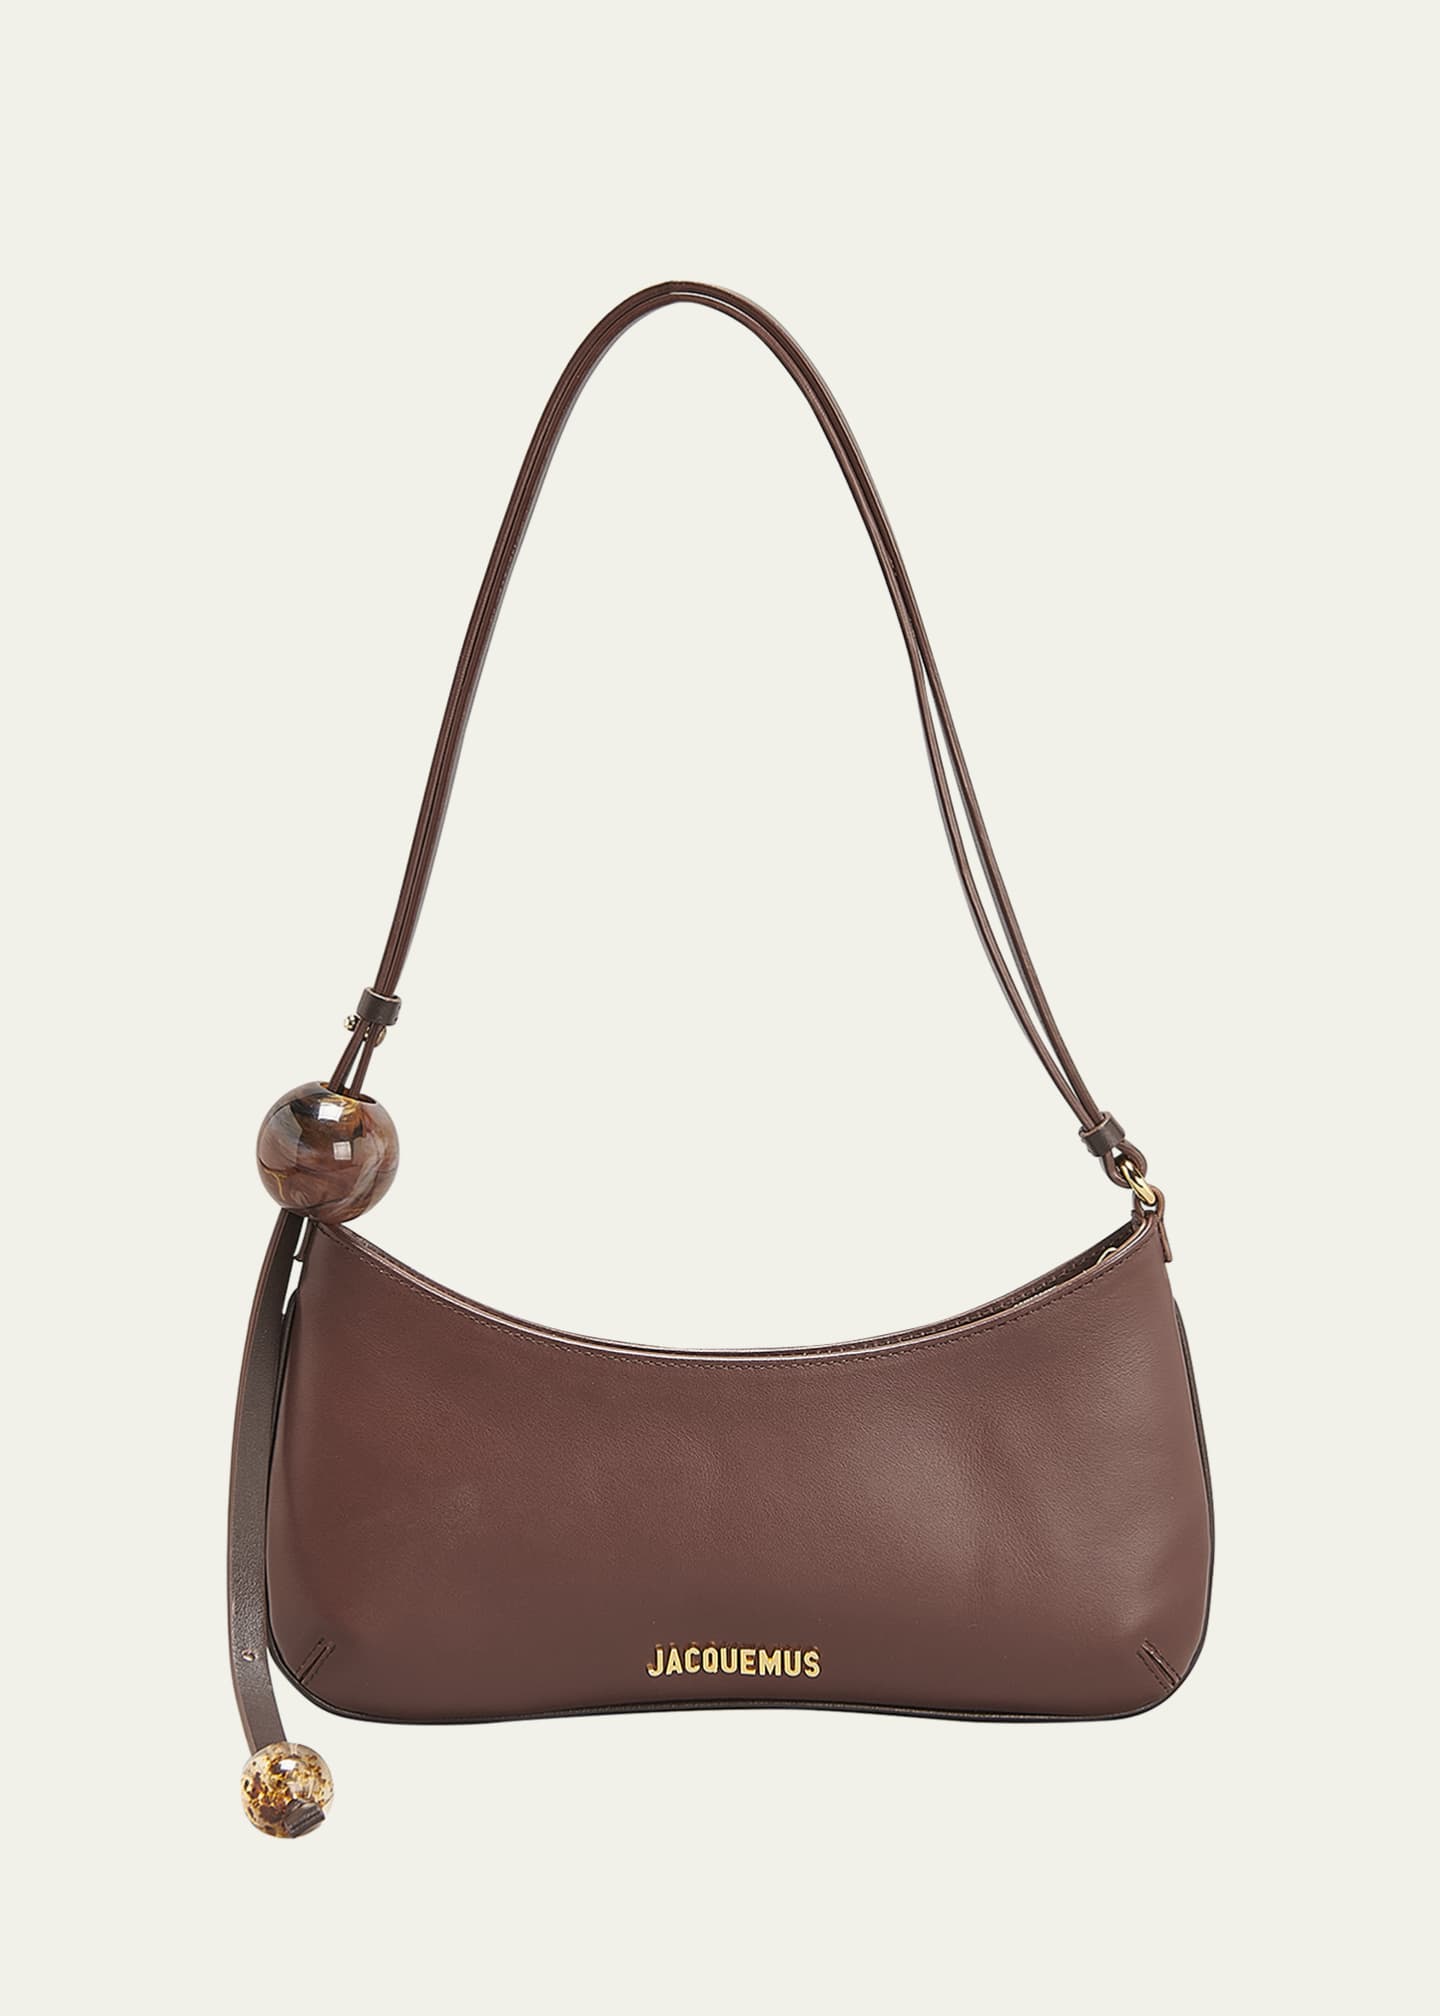 Jacquemus Women's Le Bisou Shoulder Bag